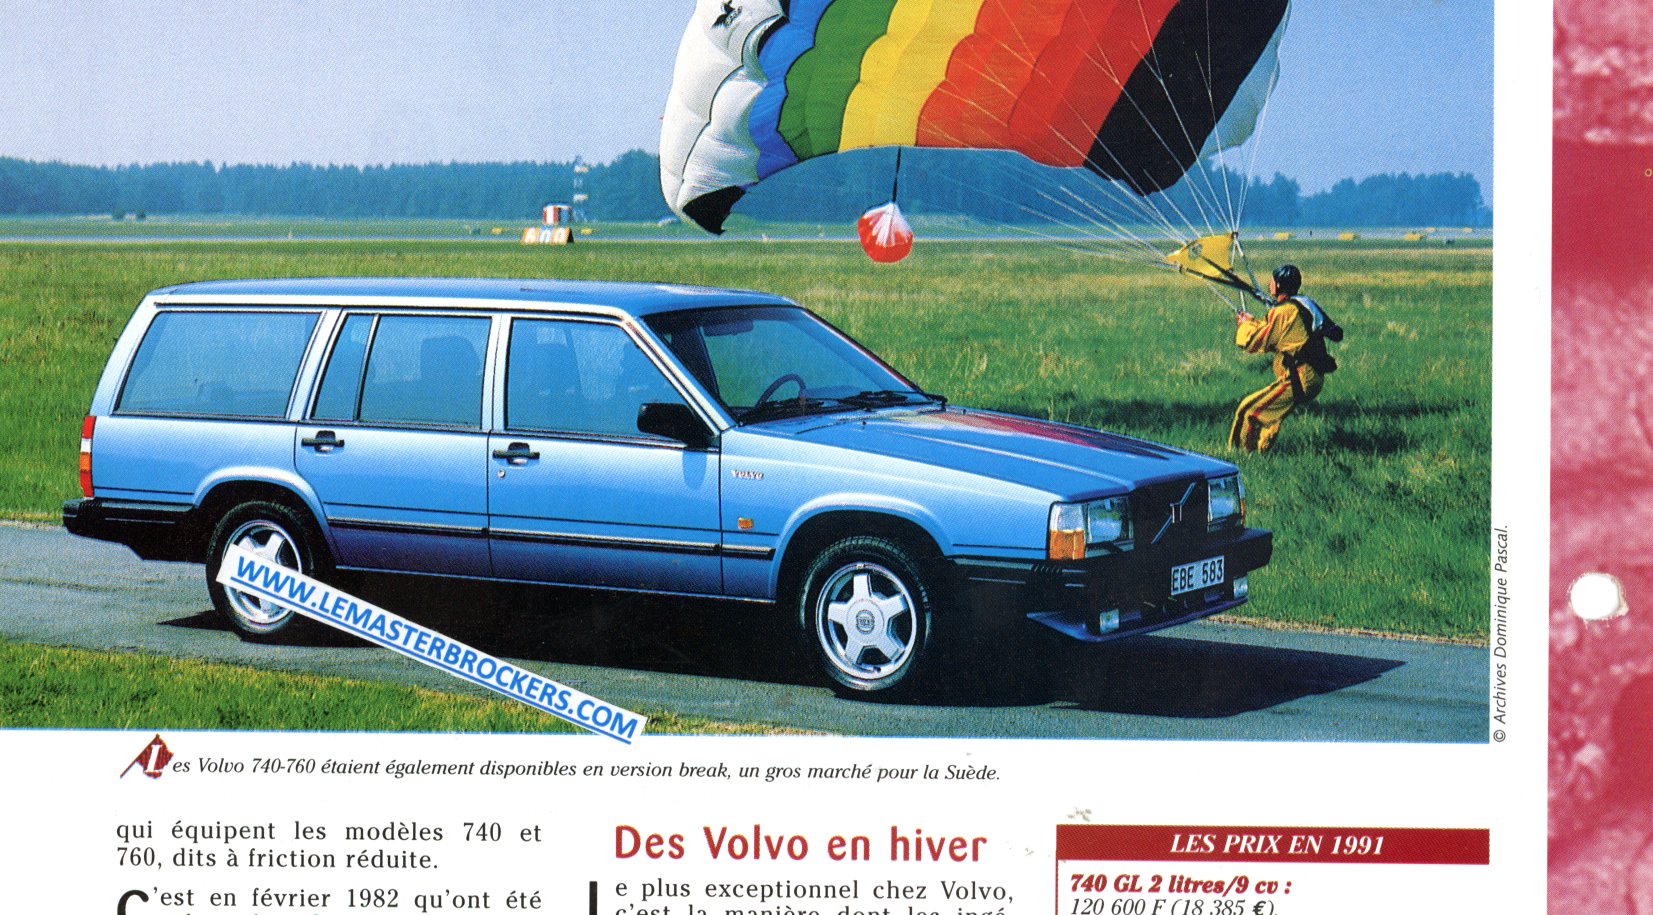 VOLVO 740 760 1982 - fiche automobile hachette